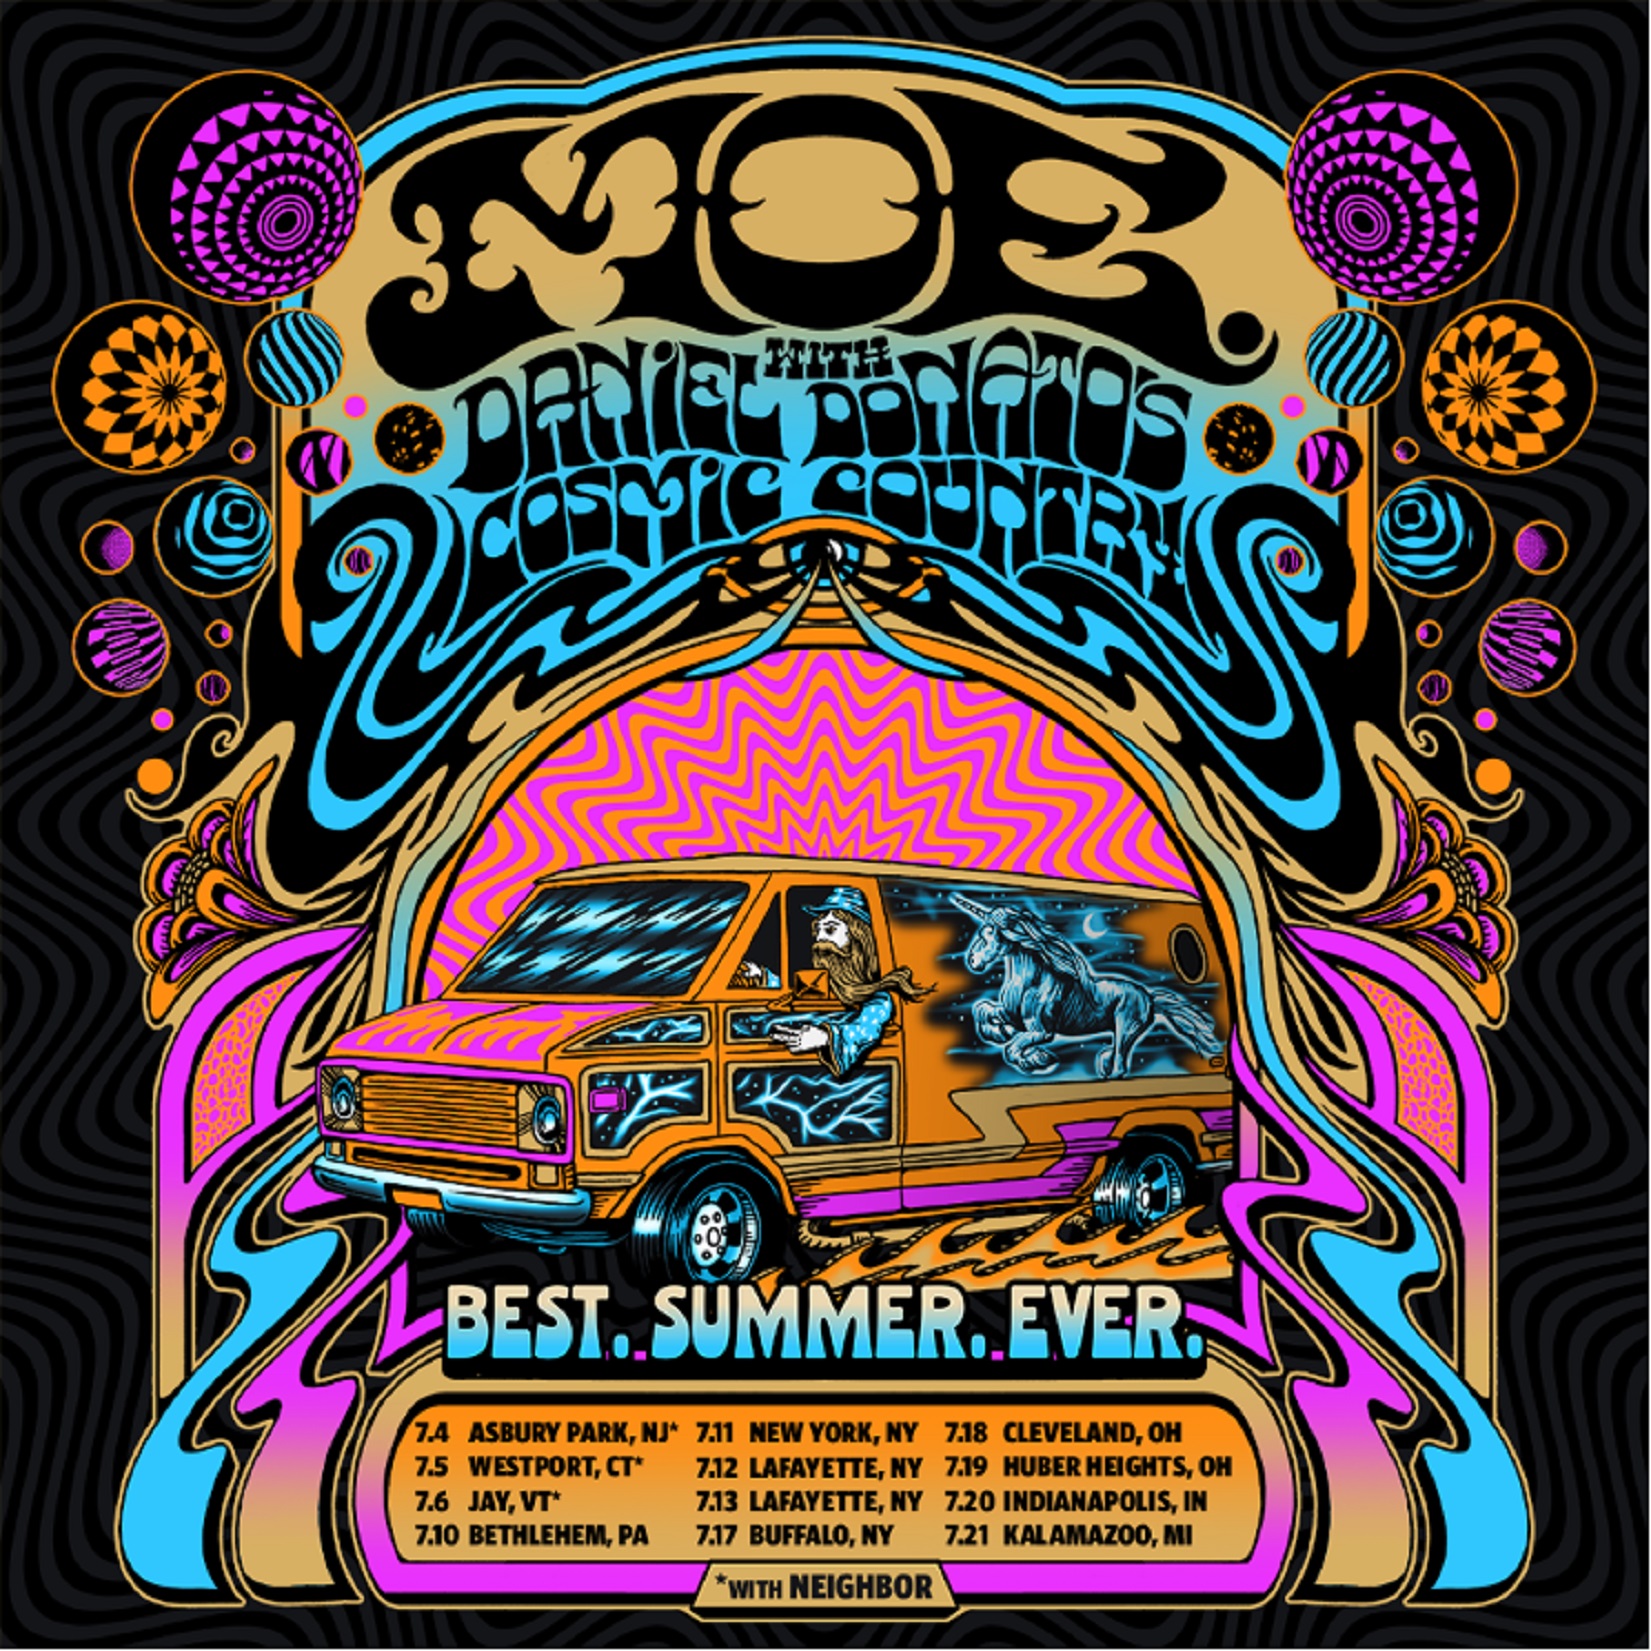 moe. Announces "Best.Summer.Ever" Tour with Daniel Donato